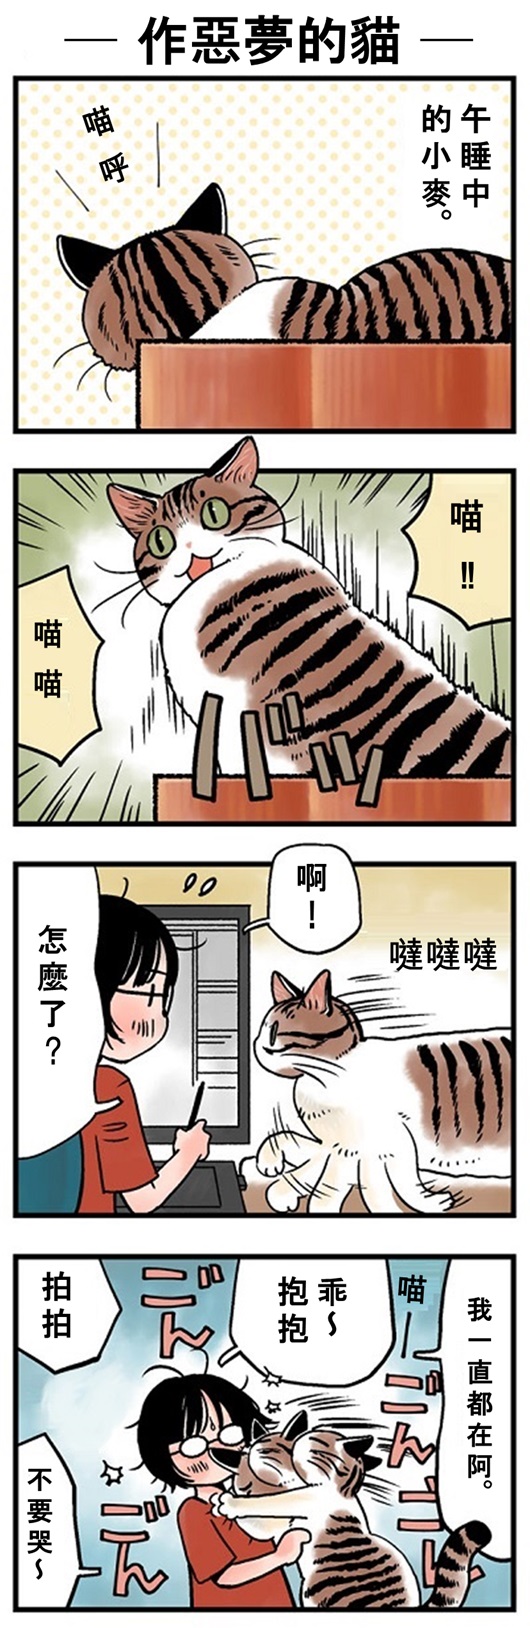 ★山野りんりん猫まみれ漫画★84話-1.jpg